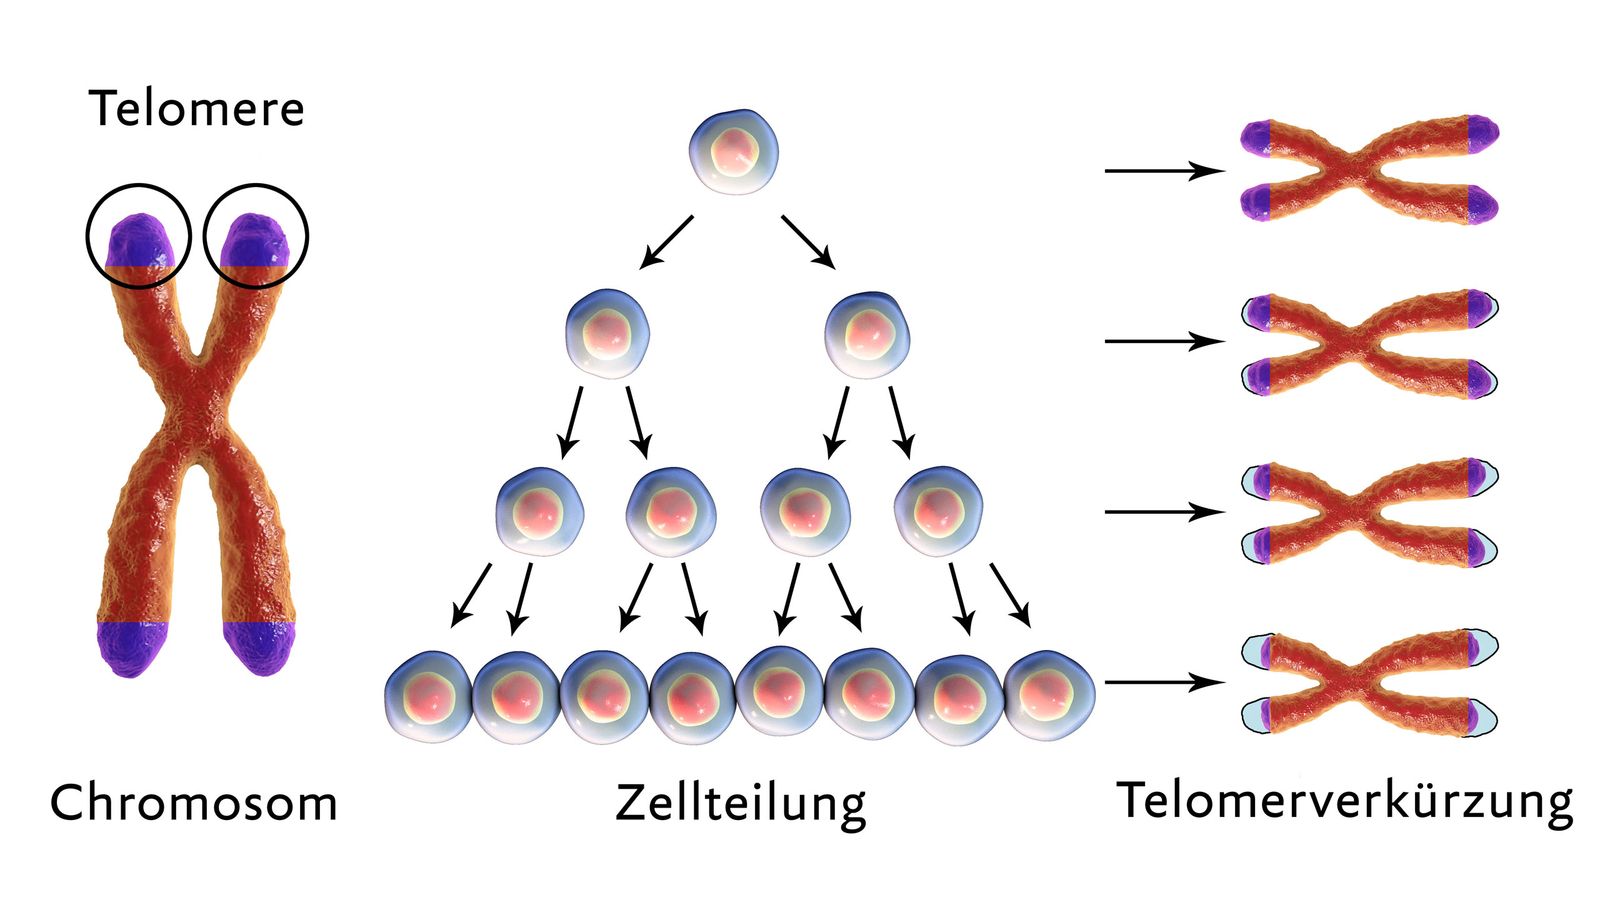 Telomere bildlich dargestellt